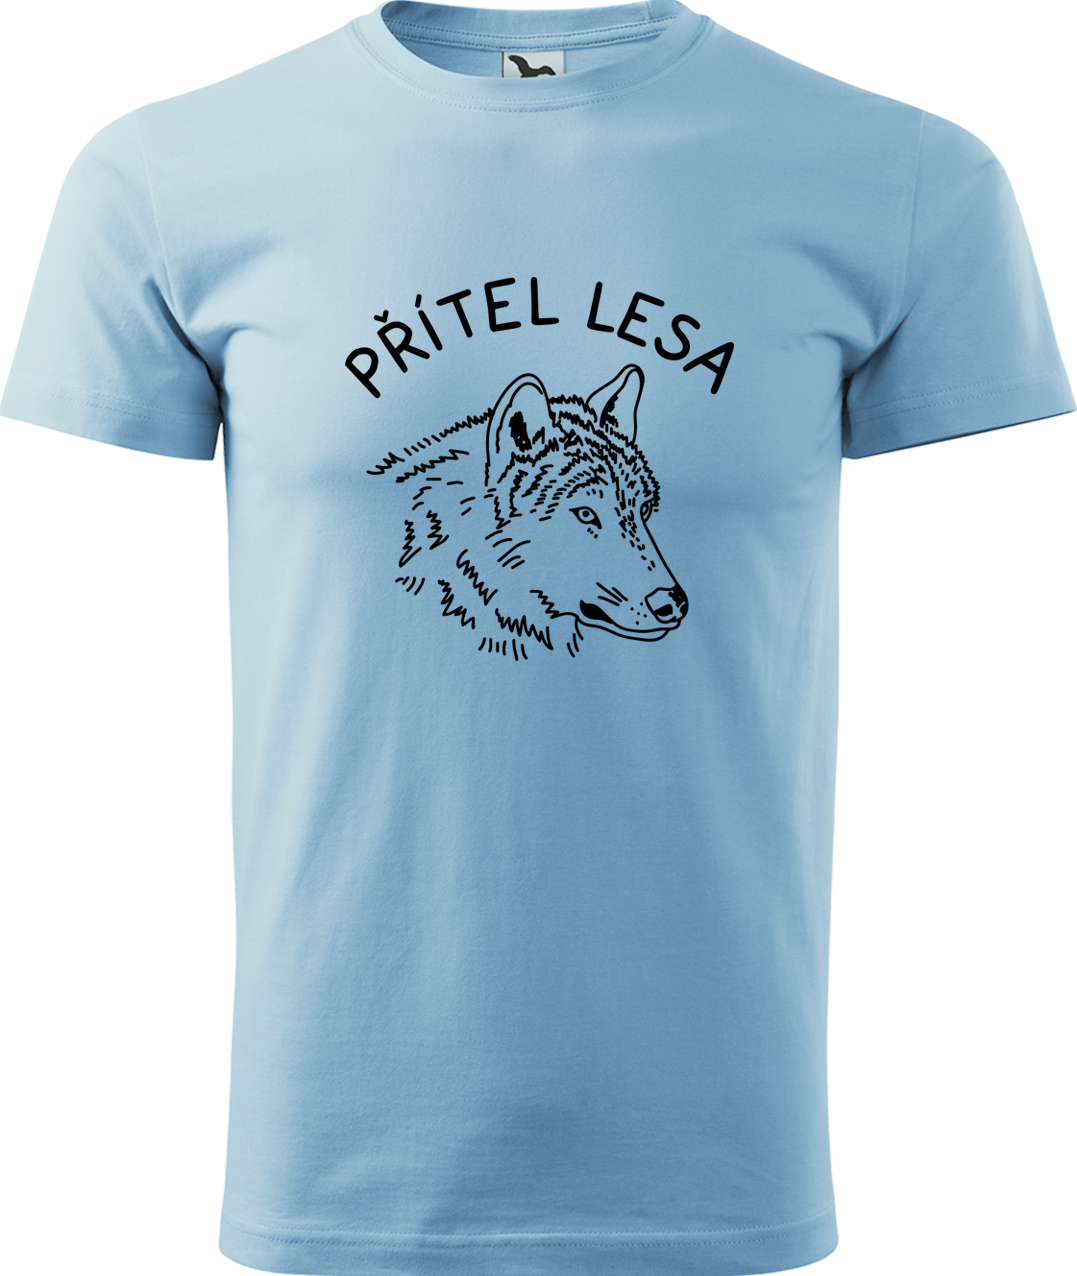 Pánské tričko s vlkem - Přítel lesa Velikost: 3XL, Barva: Nebesky modrá (15), Střih: pánský